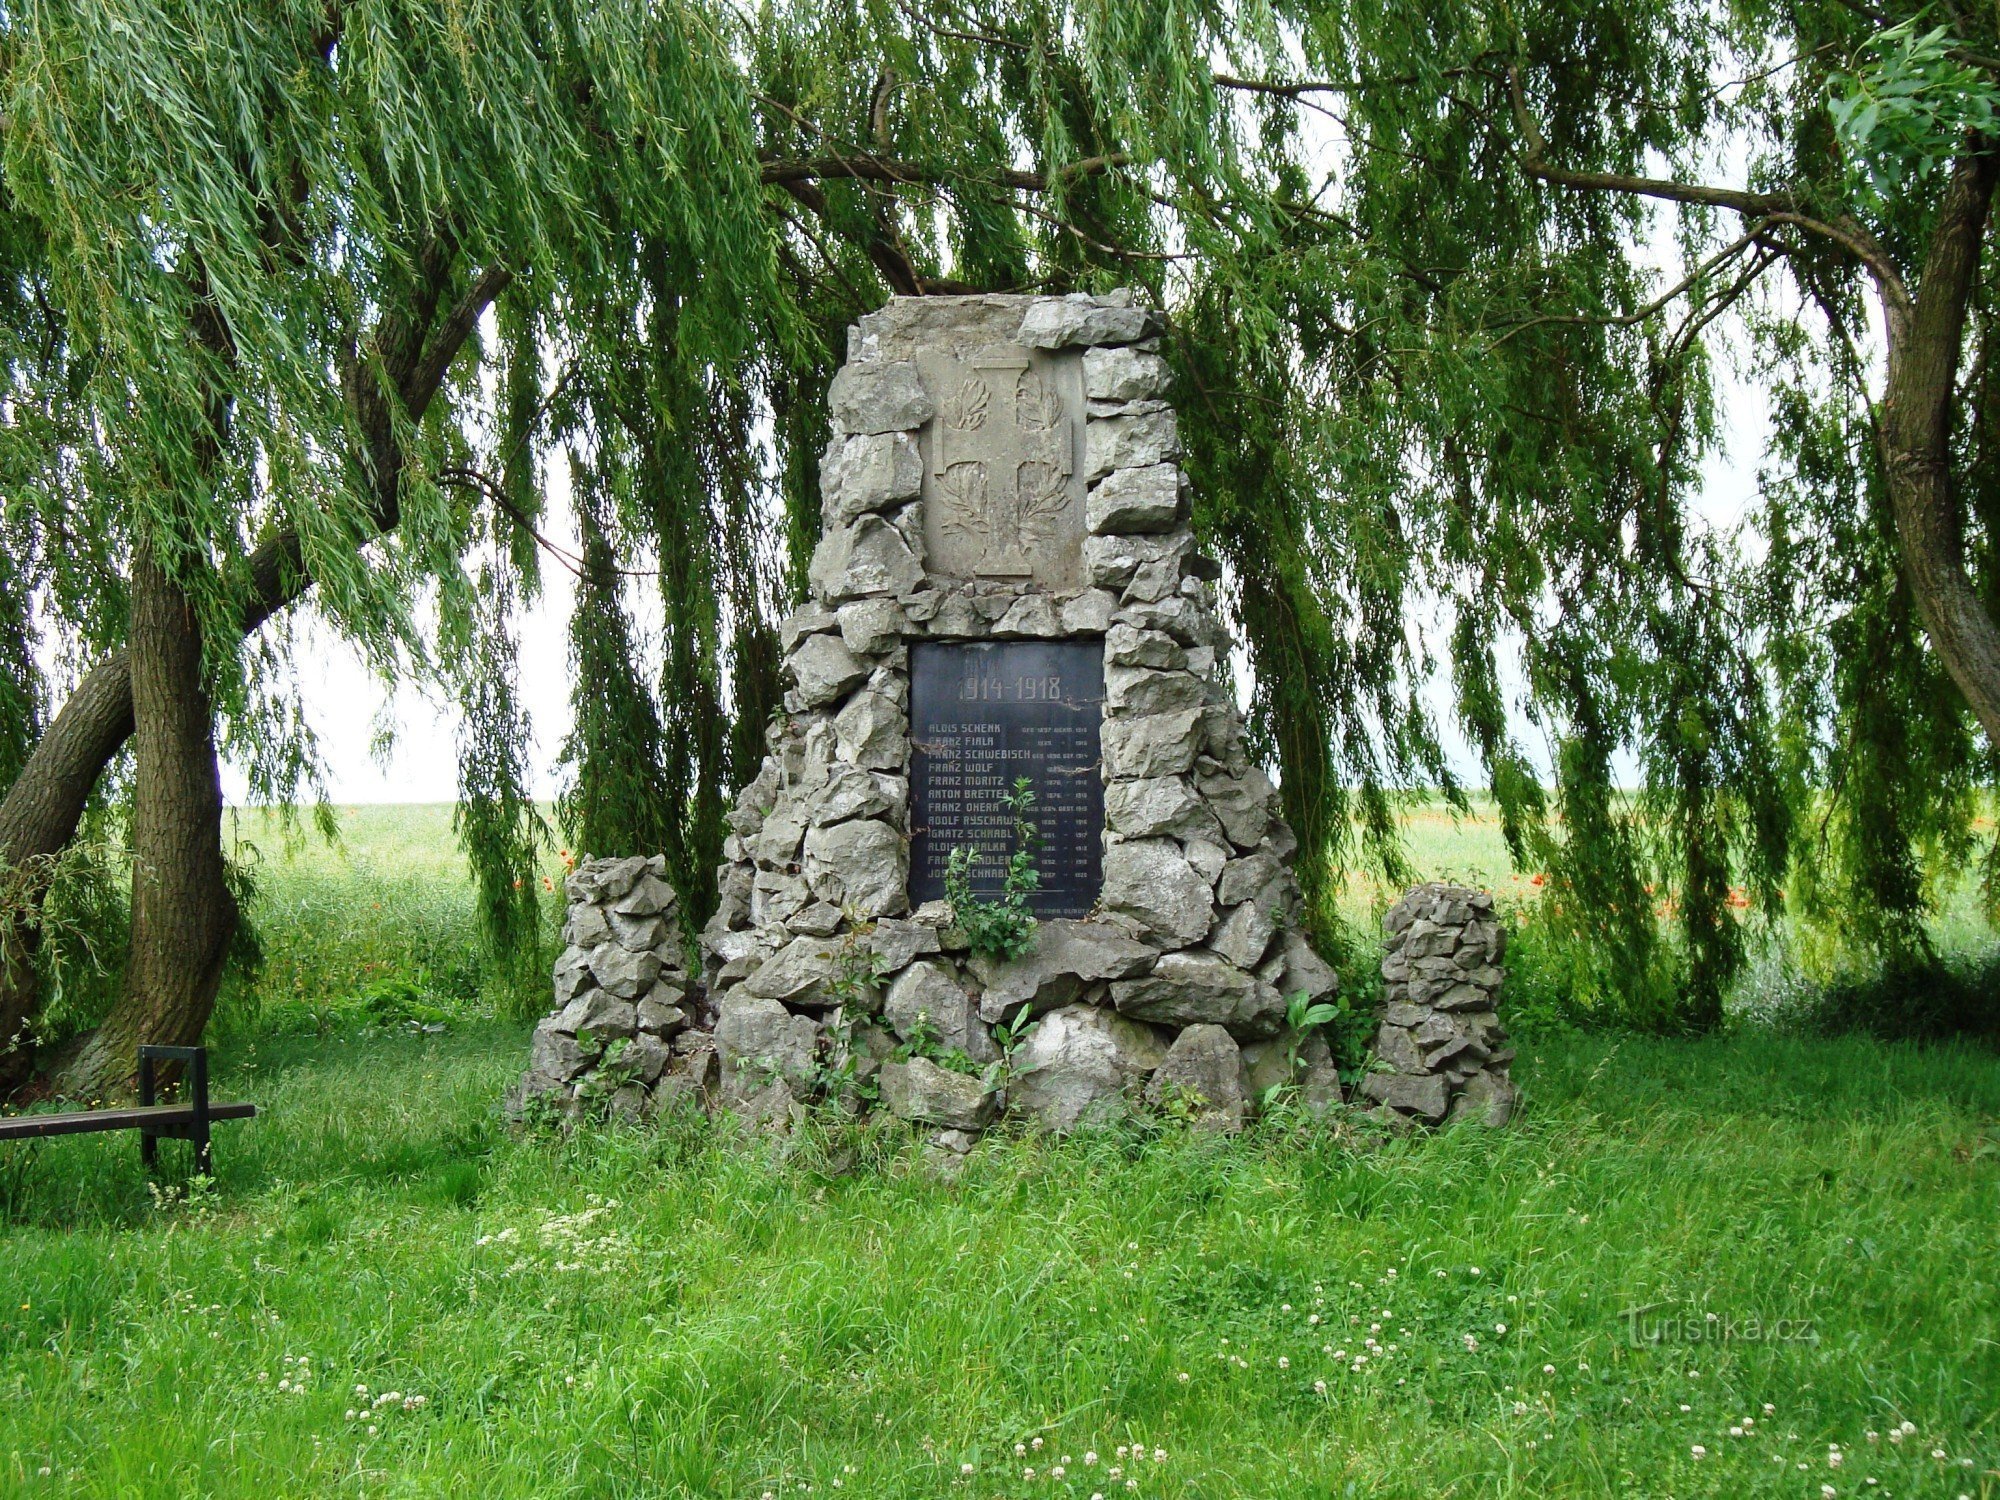 Parque Nedvězí al comienzo del pueblo con una cruz de reconciliación, una cruz de piedra de 1869 y un pom